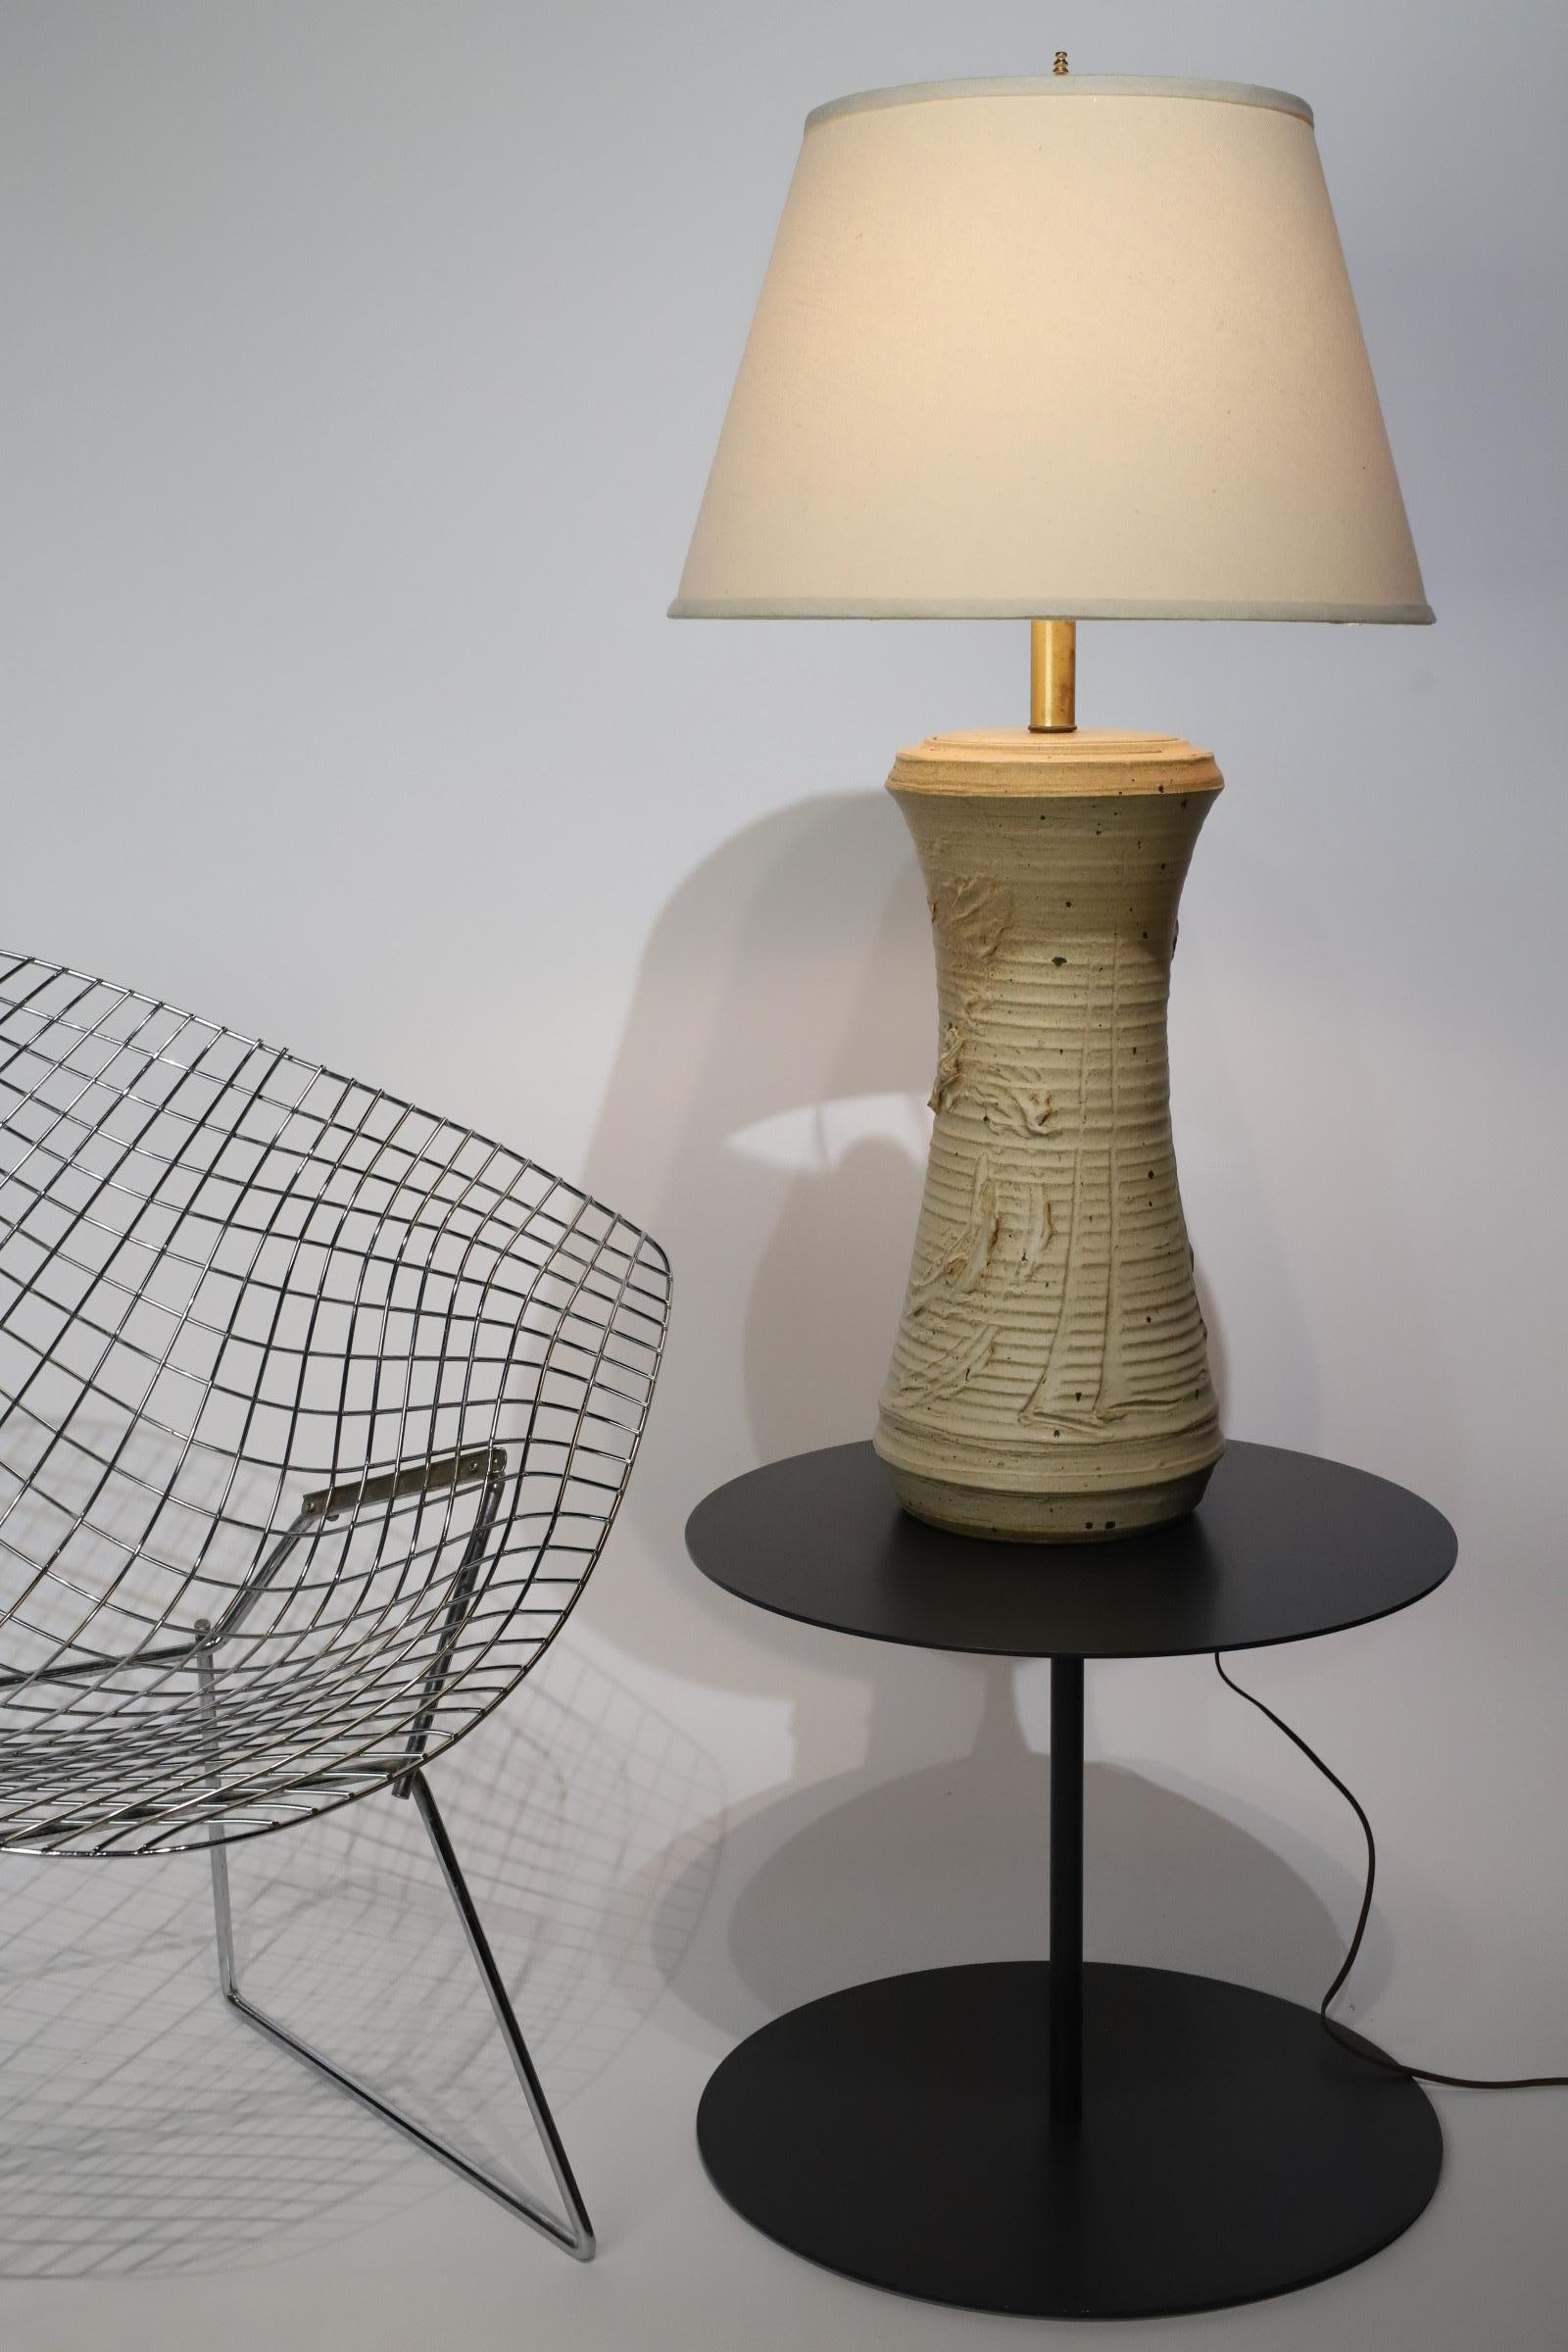 Eine bezaubernde Tischlampe aus Keramik, die der talentierte Künstler Bob Kinzie für Affiliated Craftsmen entworfen hat. Diese bemerkenswerte Leuchte ist ein wahrer Beweis für Kinzies handwerkliches Geschick und künstlerische Vision und bietet eine